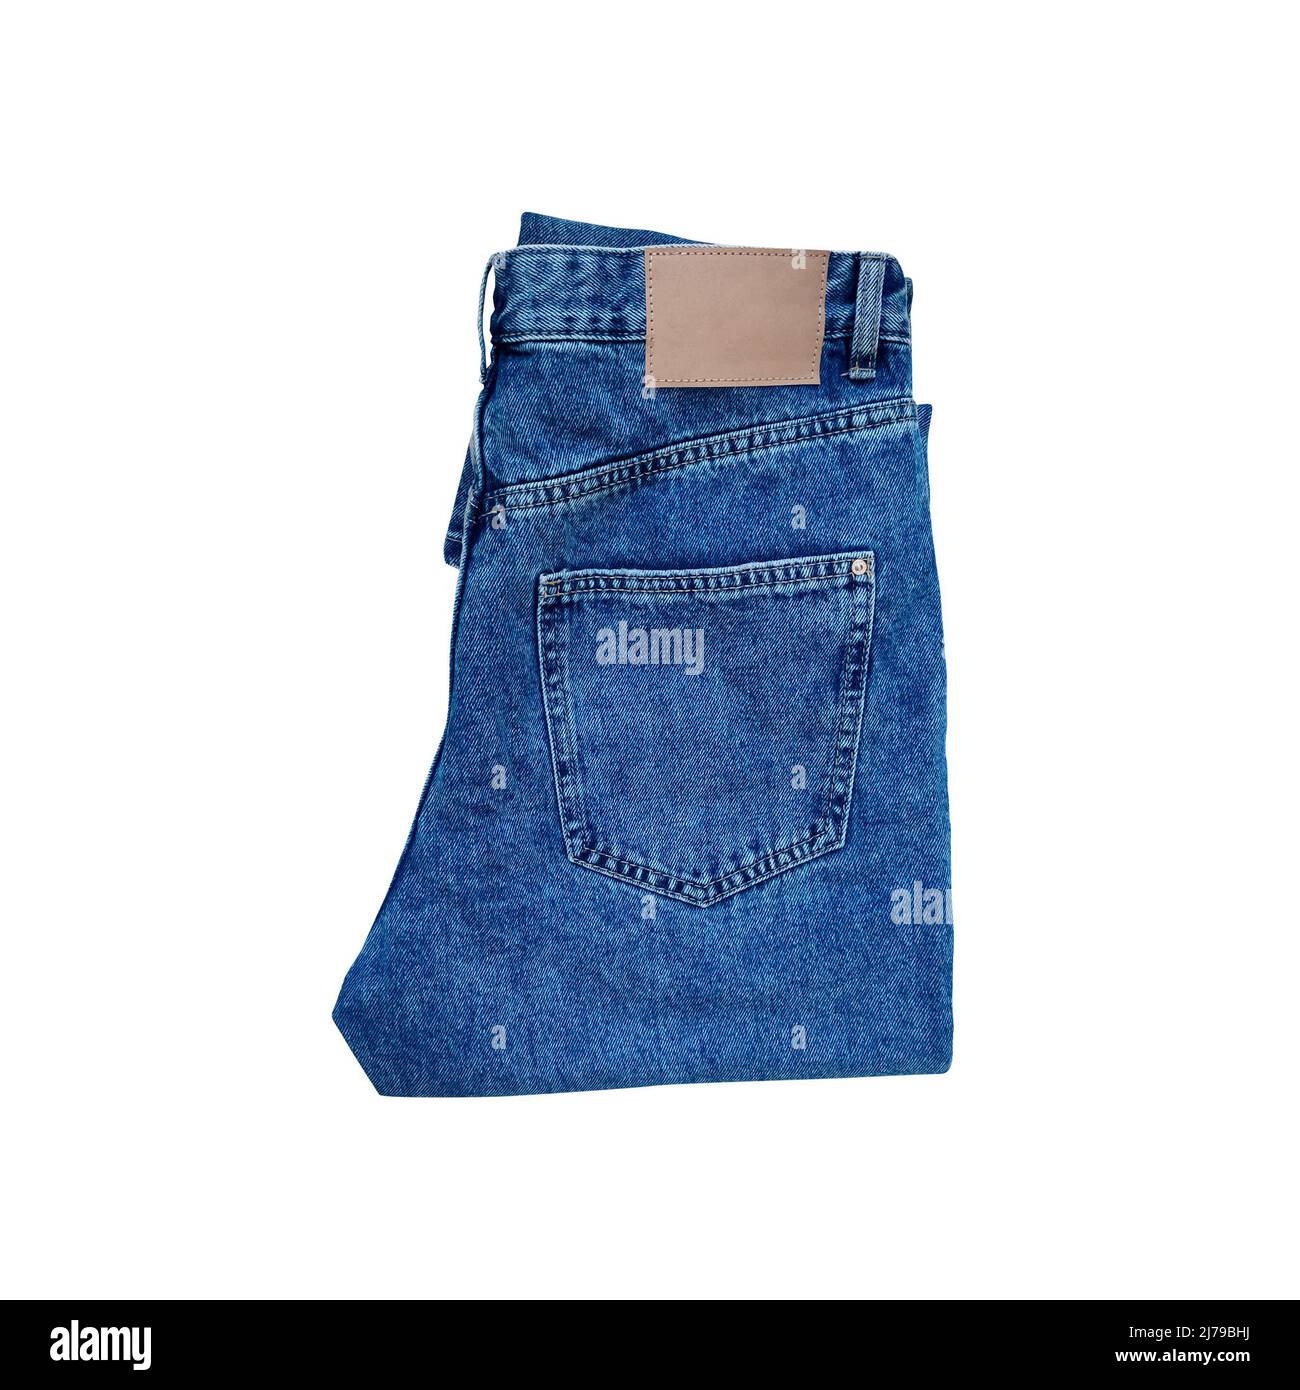 Blue folded denim jeans isolated on white background. Stock Photo